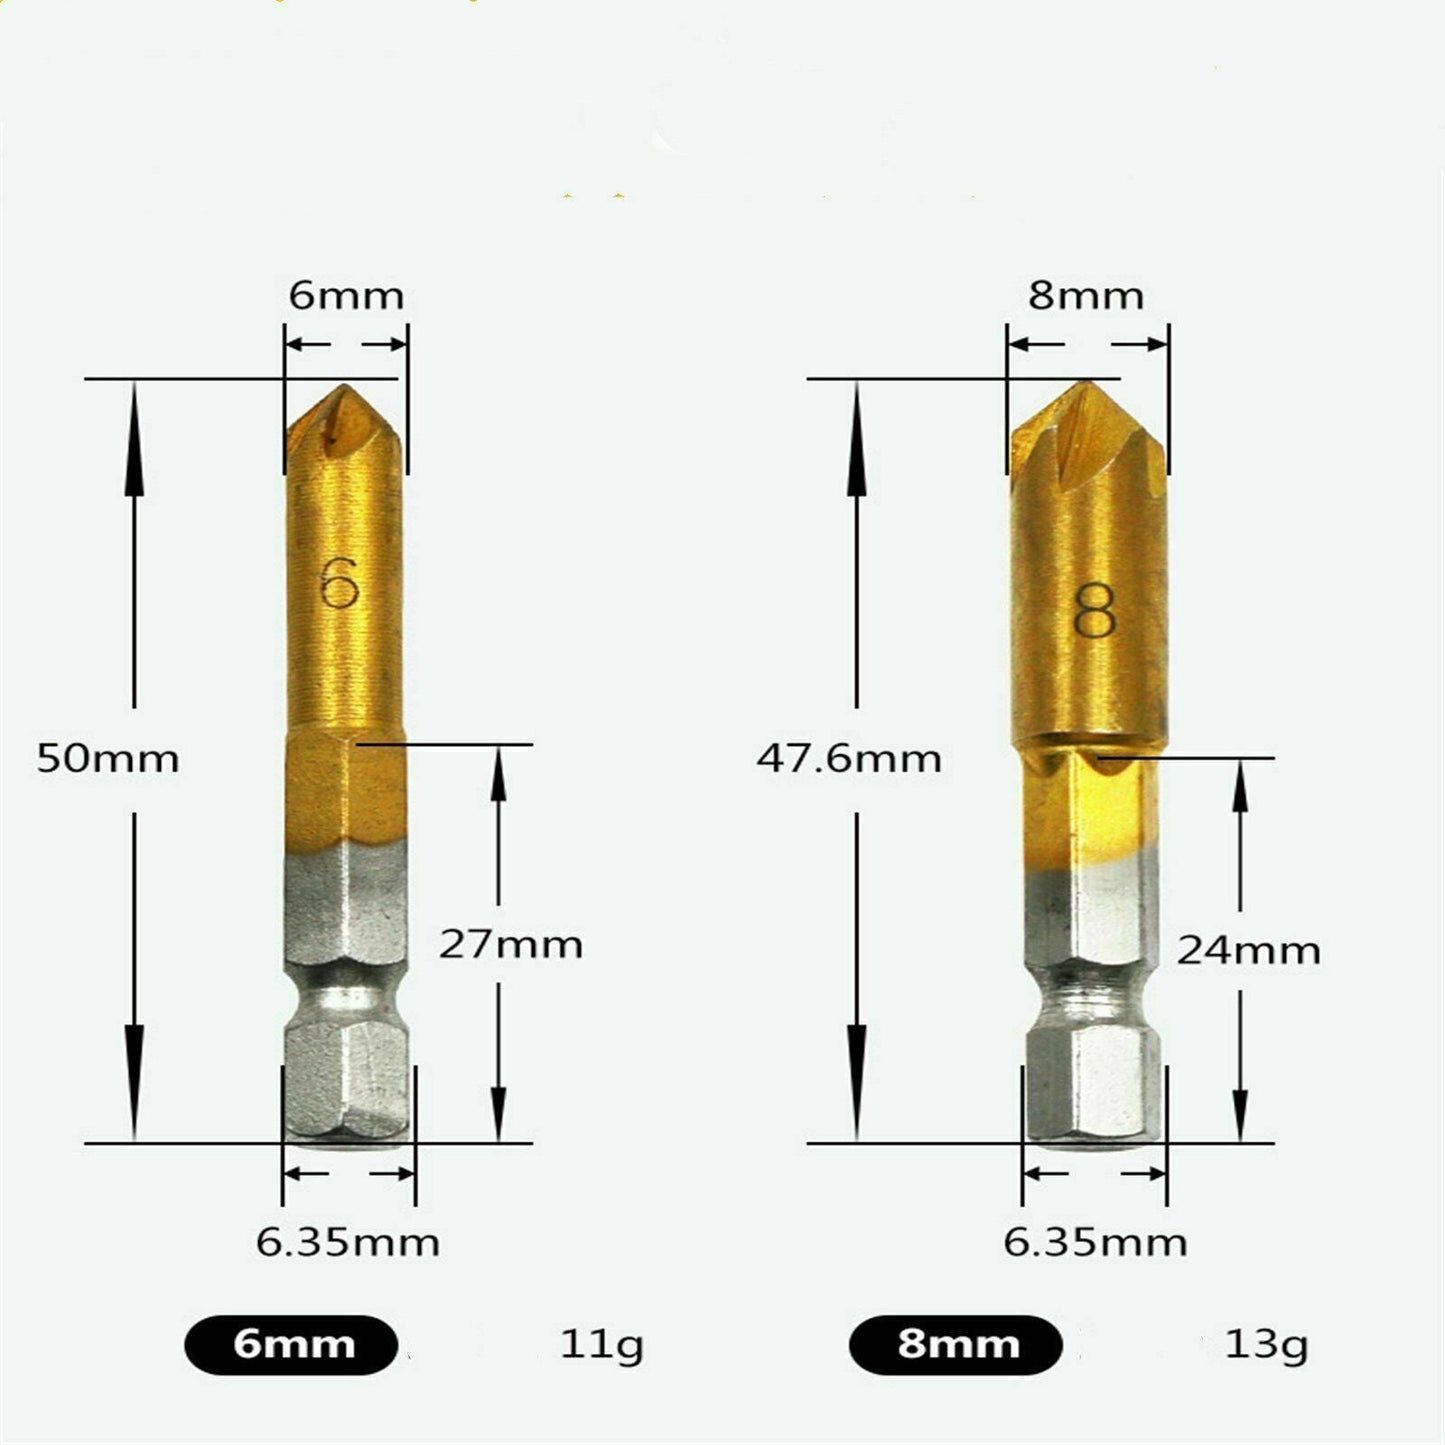 6pcs Countersink Drill Bit Crosshole Cutting Tool Drill Bits Metal Drilling AU